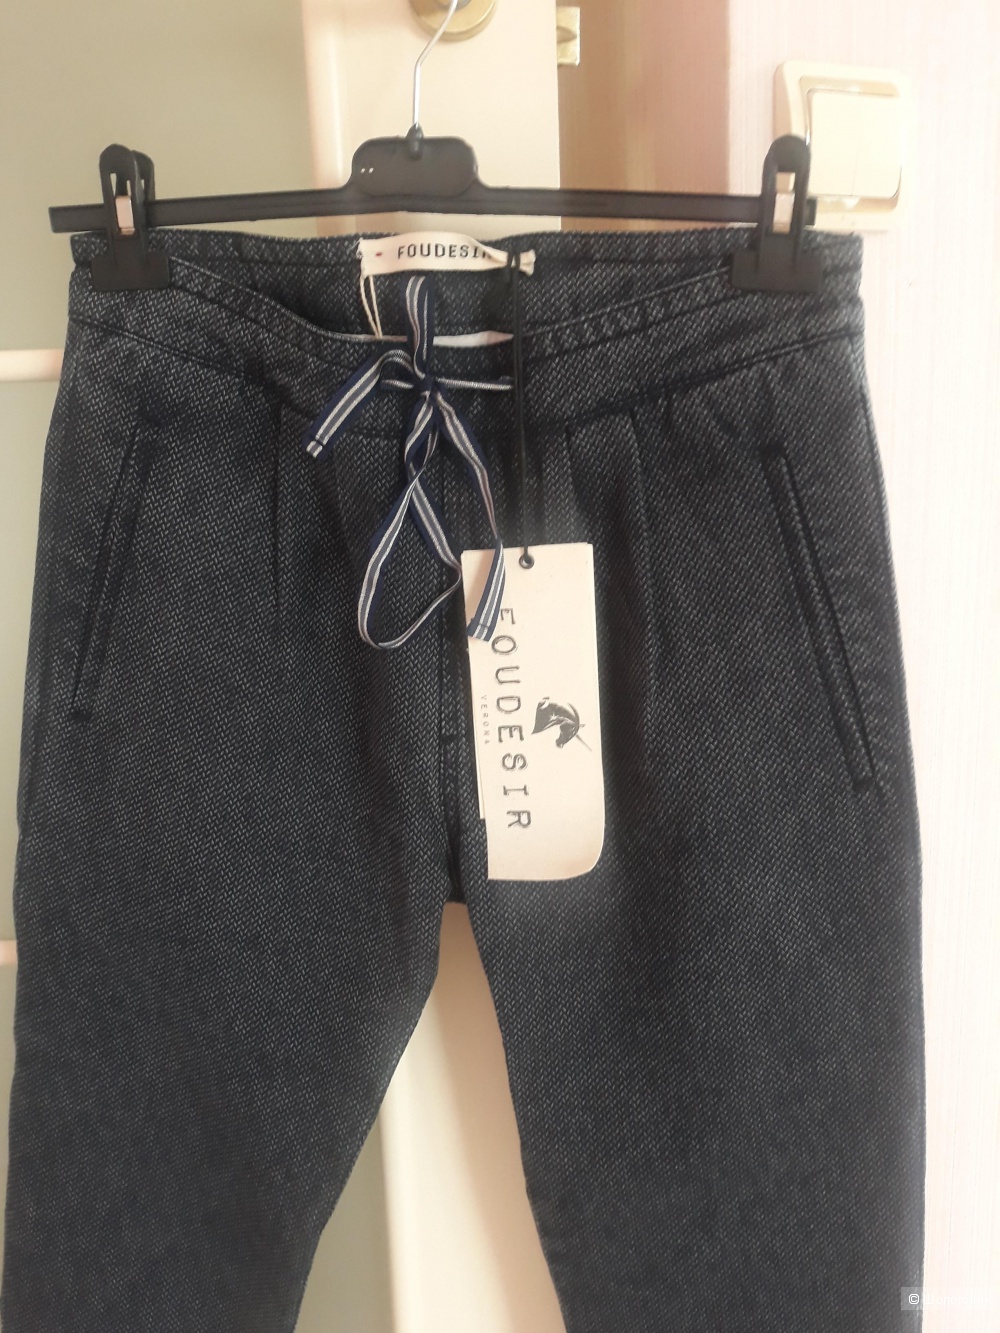 Джинсовые брюки  FOUDESIR, Италия. Размер 38IT, большемерят